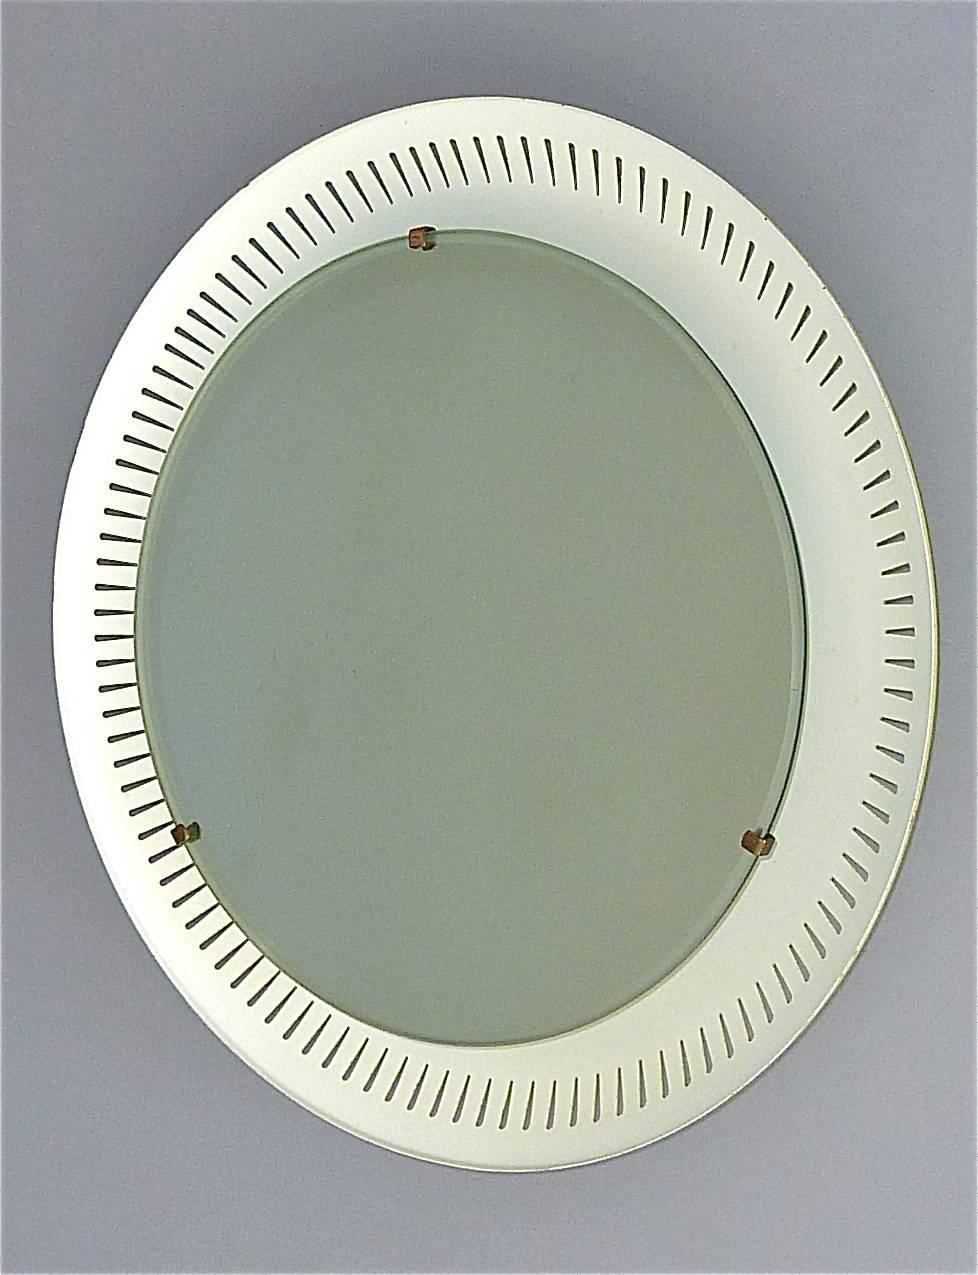 1950s bathroom mirror